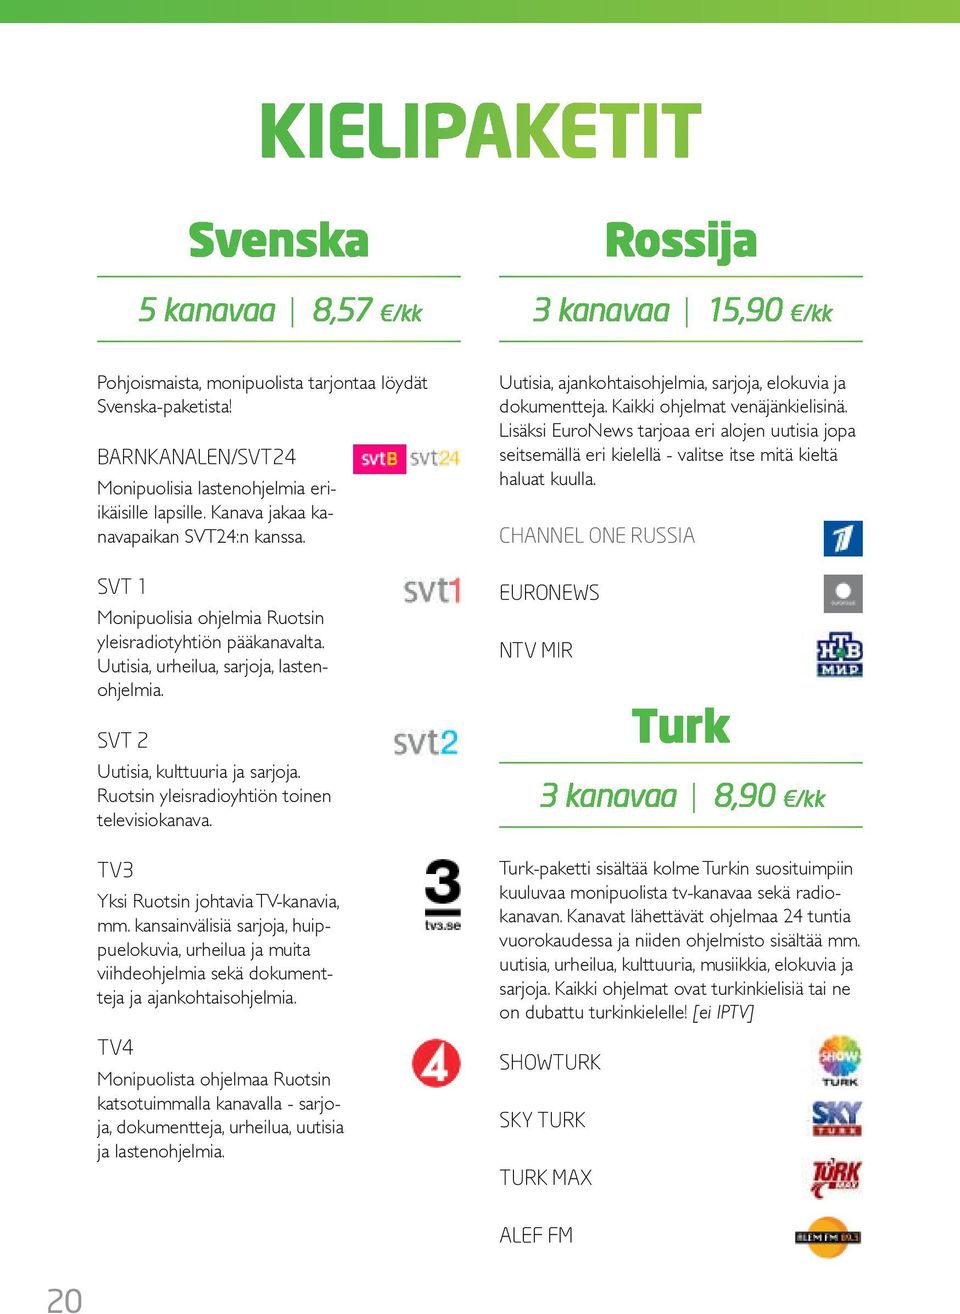 Ruotsin yleisradioyhtiön toinen televisiokanava. TV3 ksi Ruotsin johtavia TV-kanavia, mm.